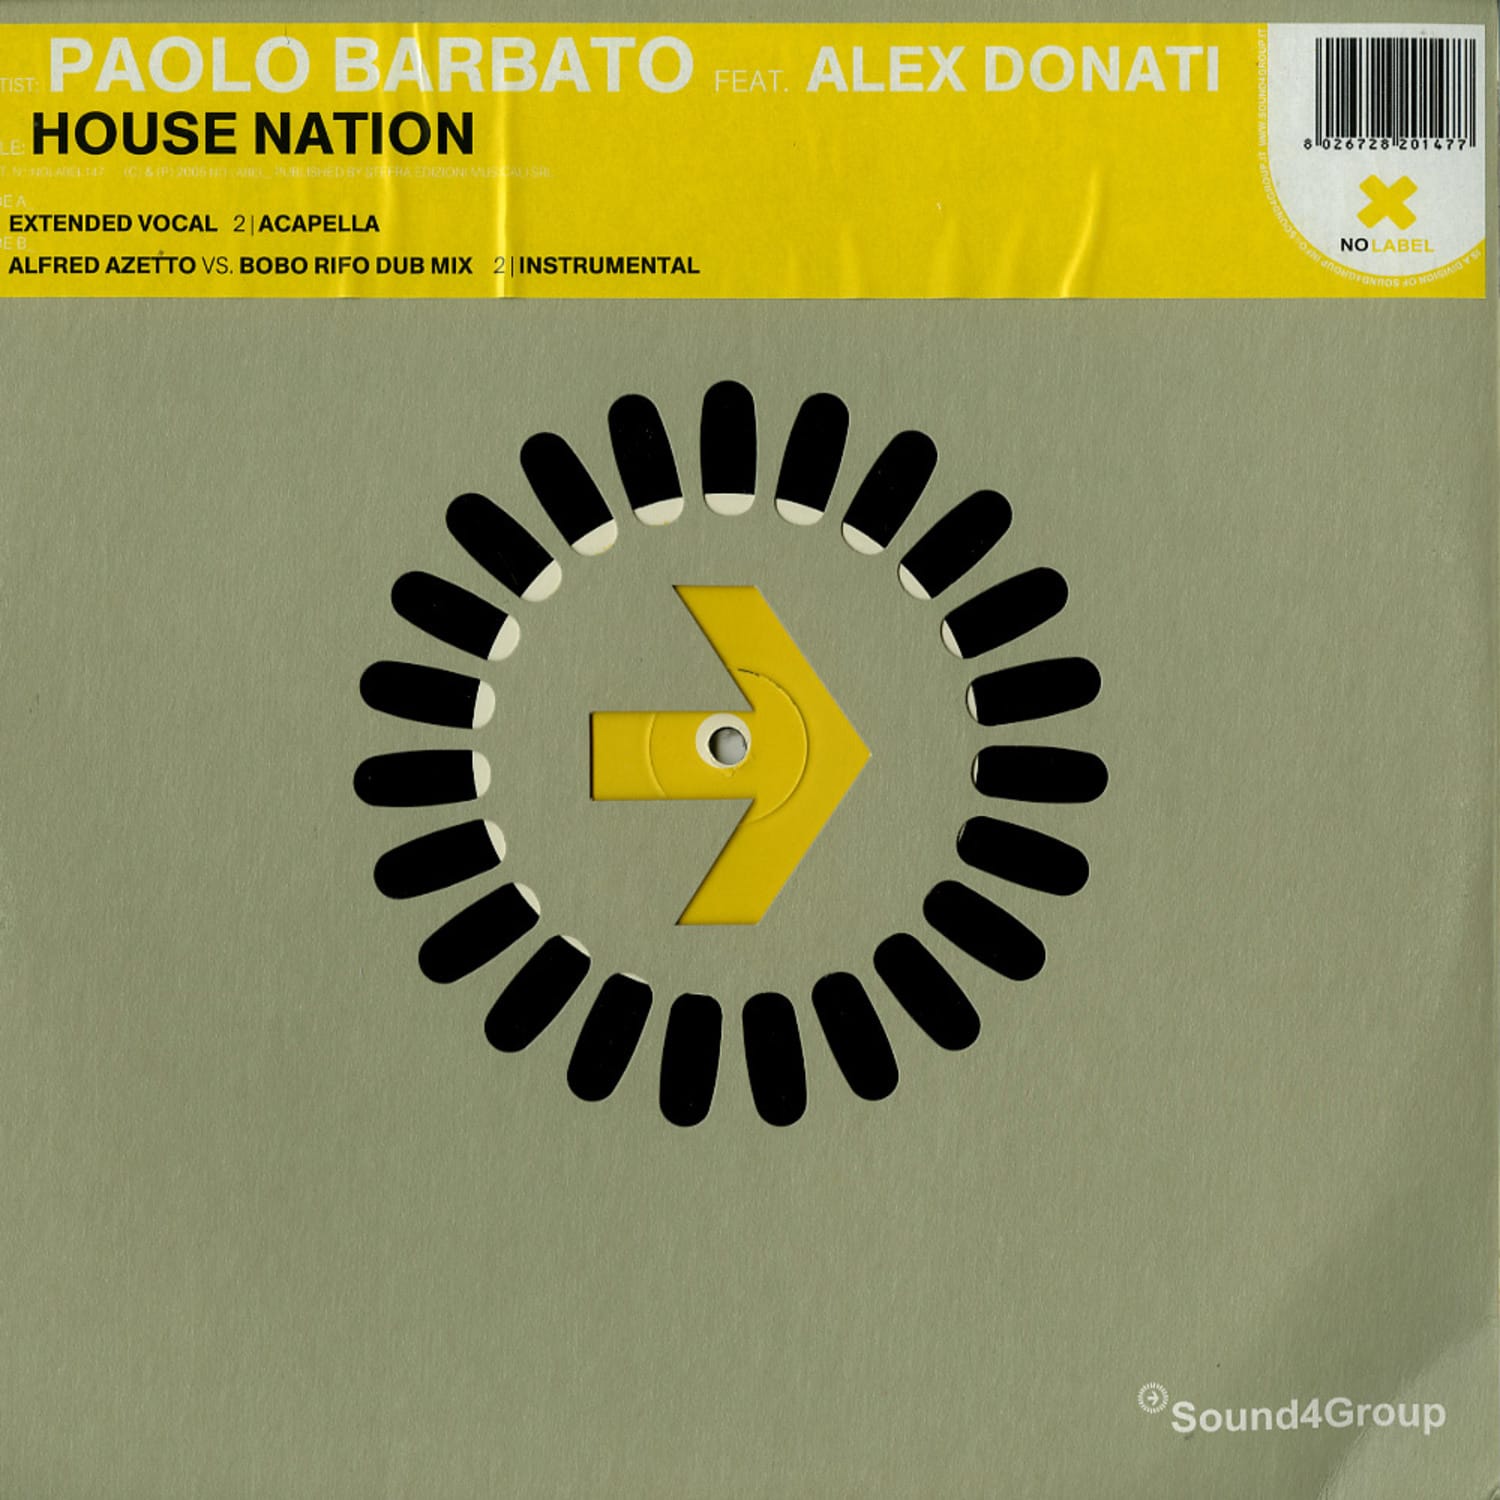 Paolo Barbato feat. Alex Donati - HOUSE NATION